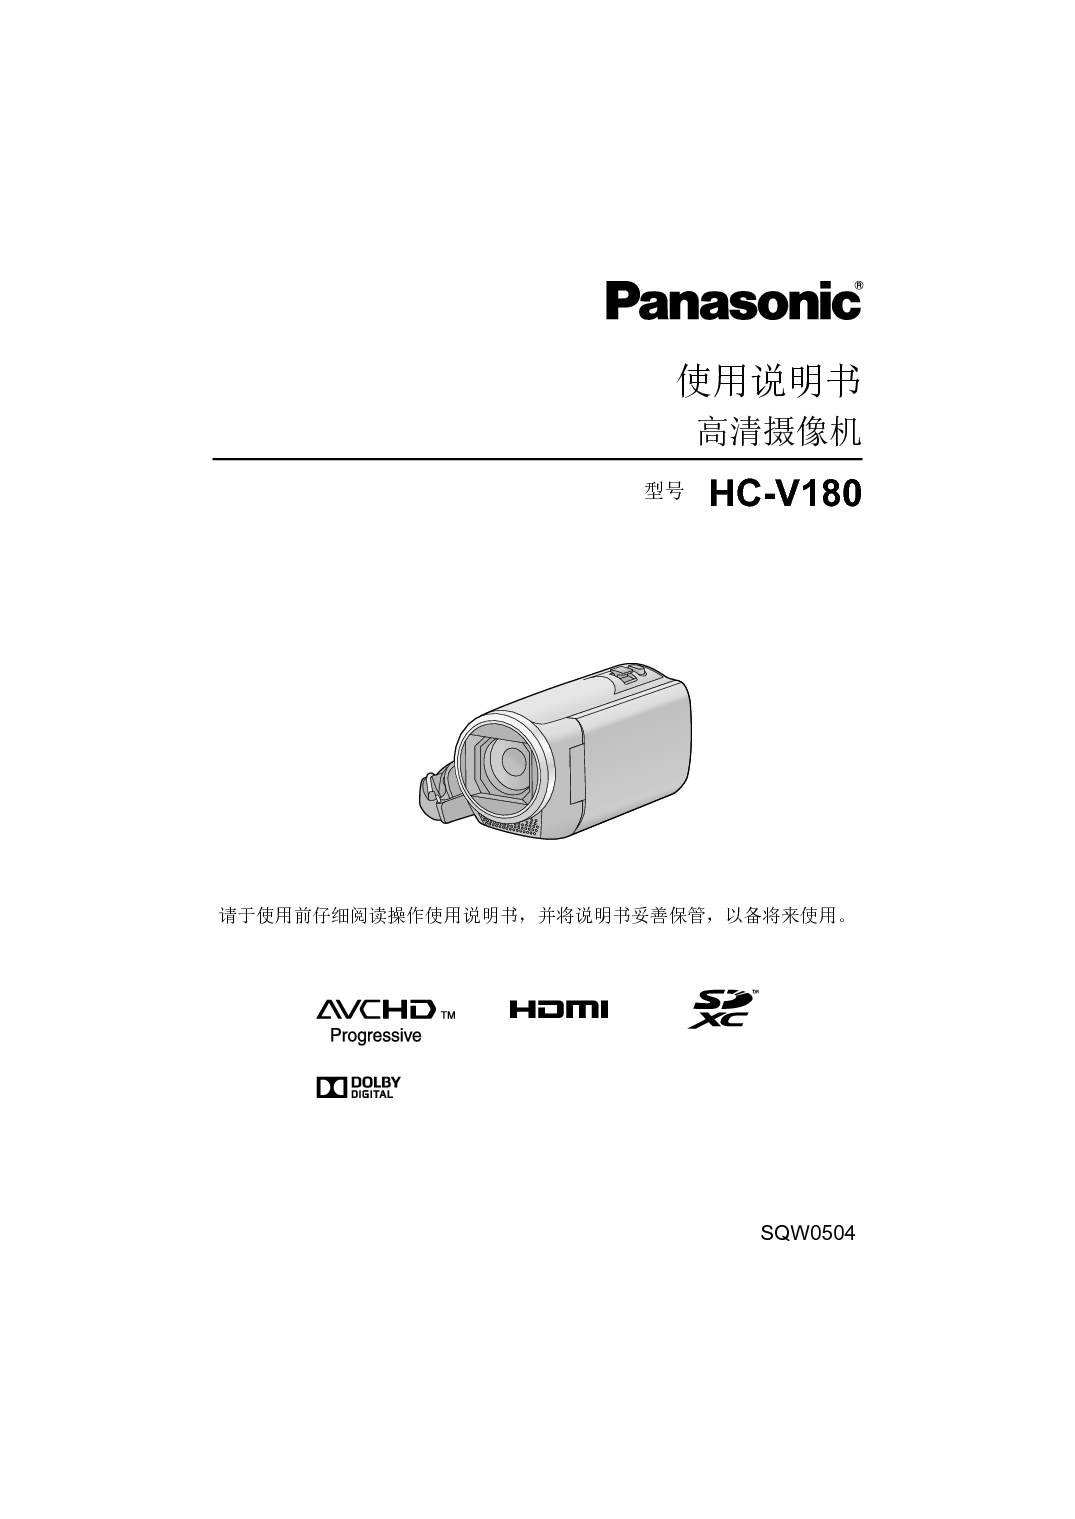 松下 Panasonic HC-V180GK 使用说明书 封面